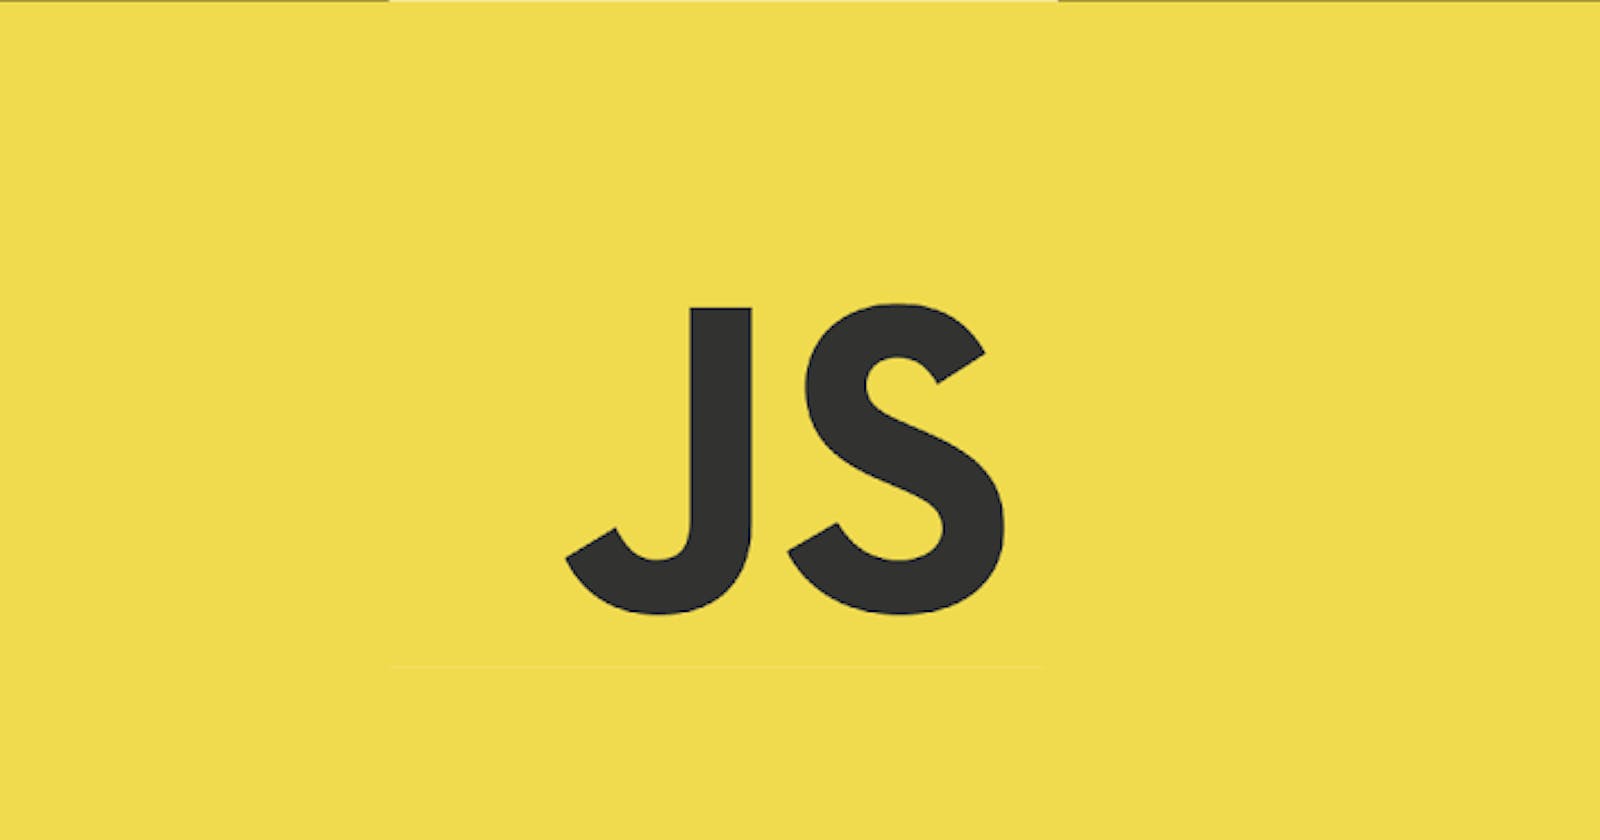 Higher Order Functions in Javascript